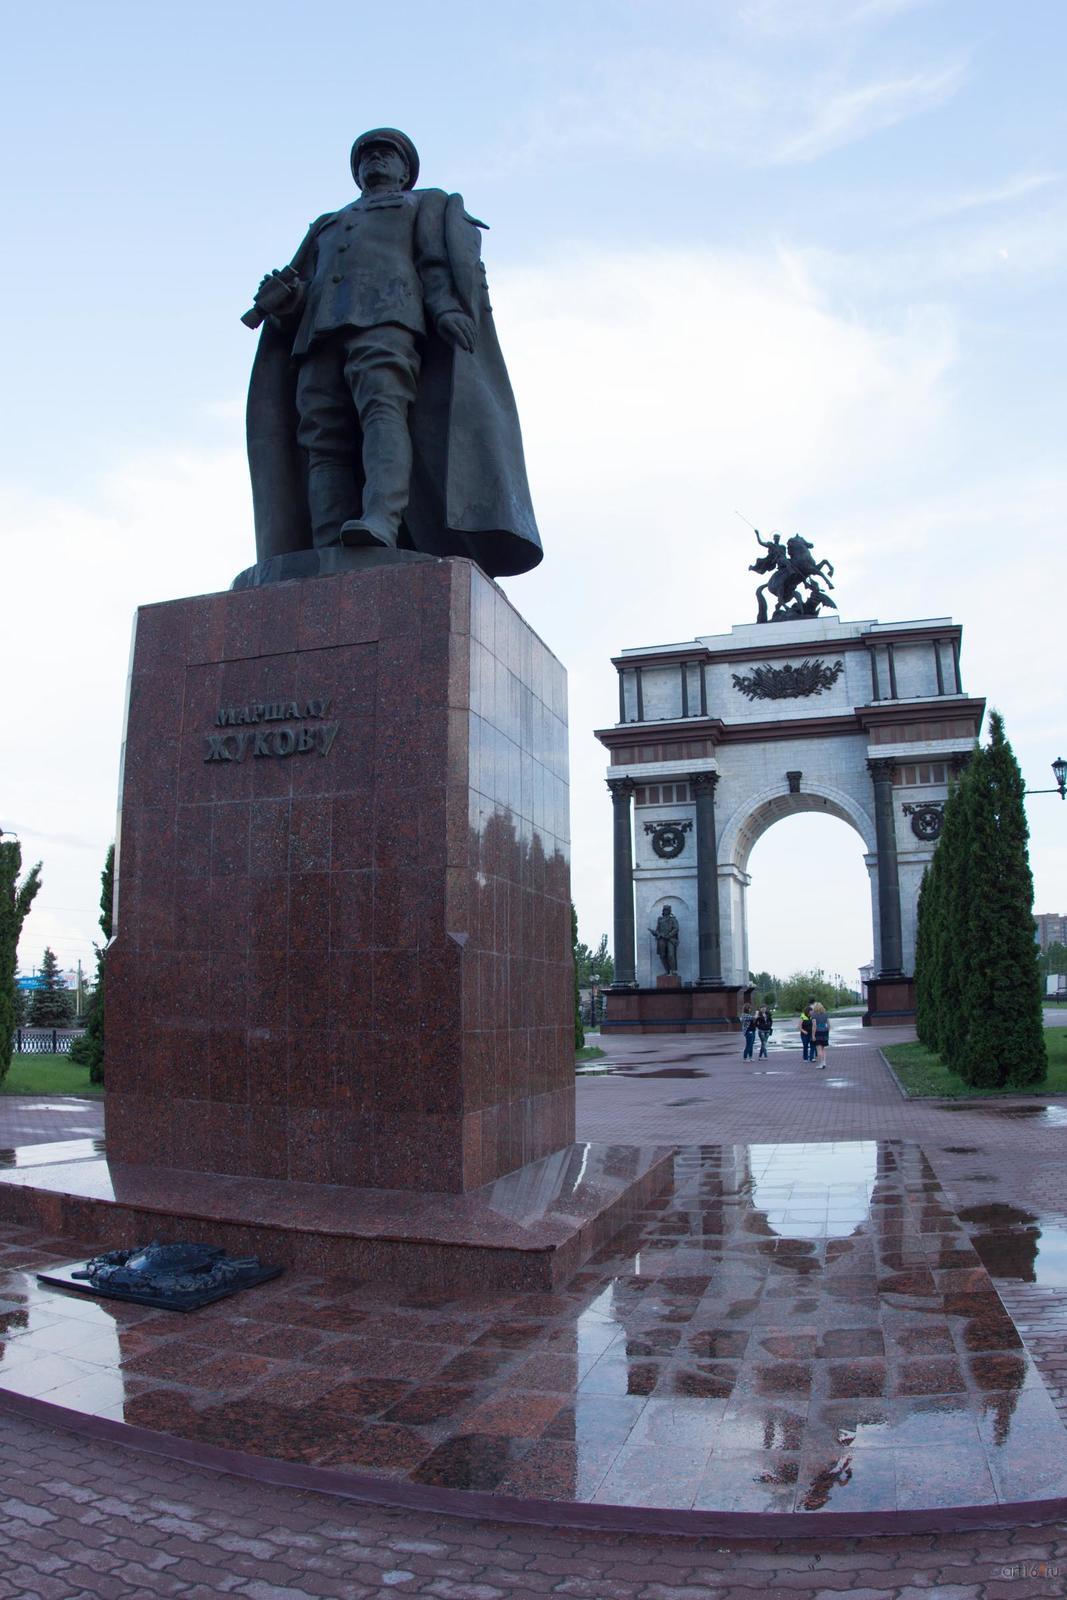 Фото №828843. Памятник Жукову и триумфальная арка, г. Курск, июнь 2015